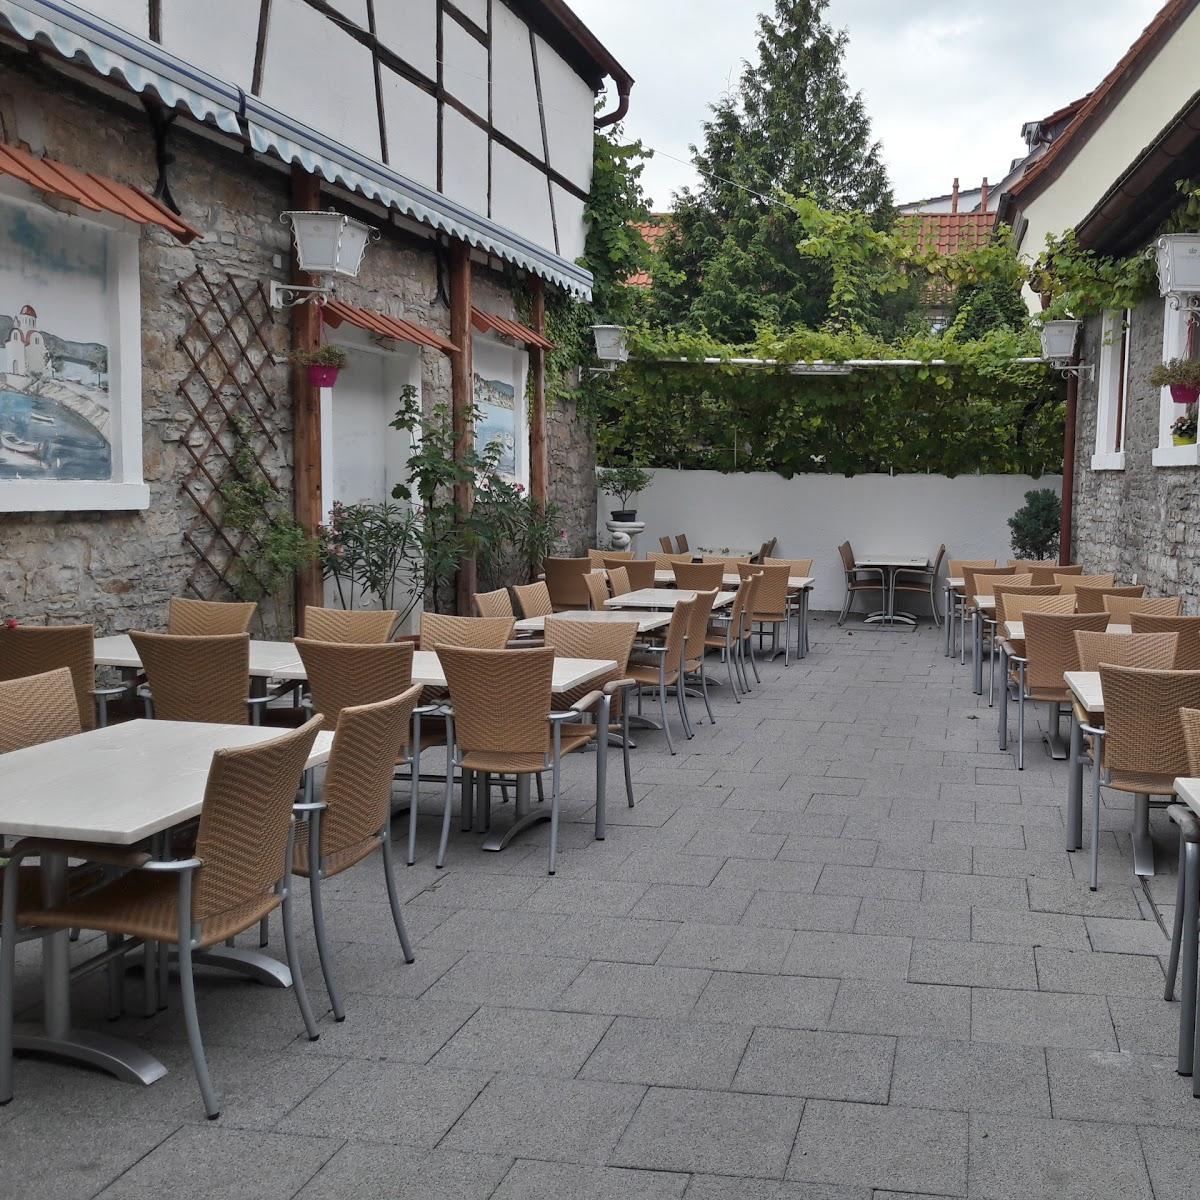 Restaurant "Alte Scheune" in  Oberschwarzach